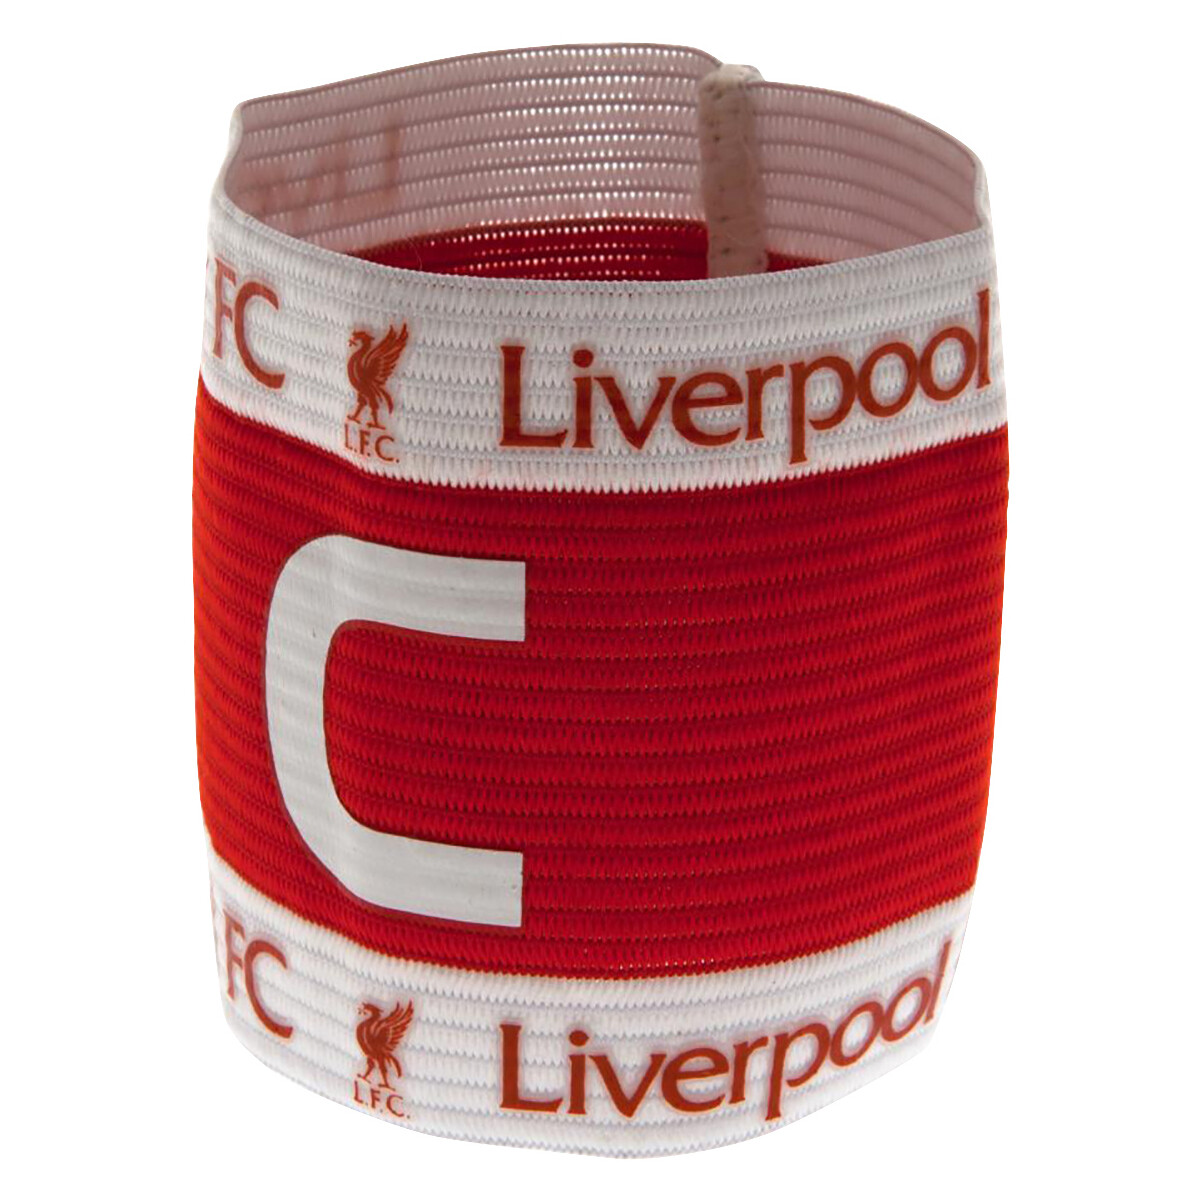 Accesorios Complemento para deporte Liverpool Fc TA582 Rojo